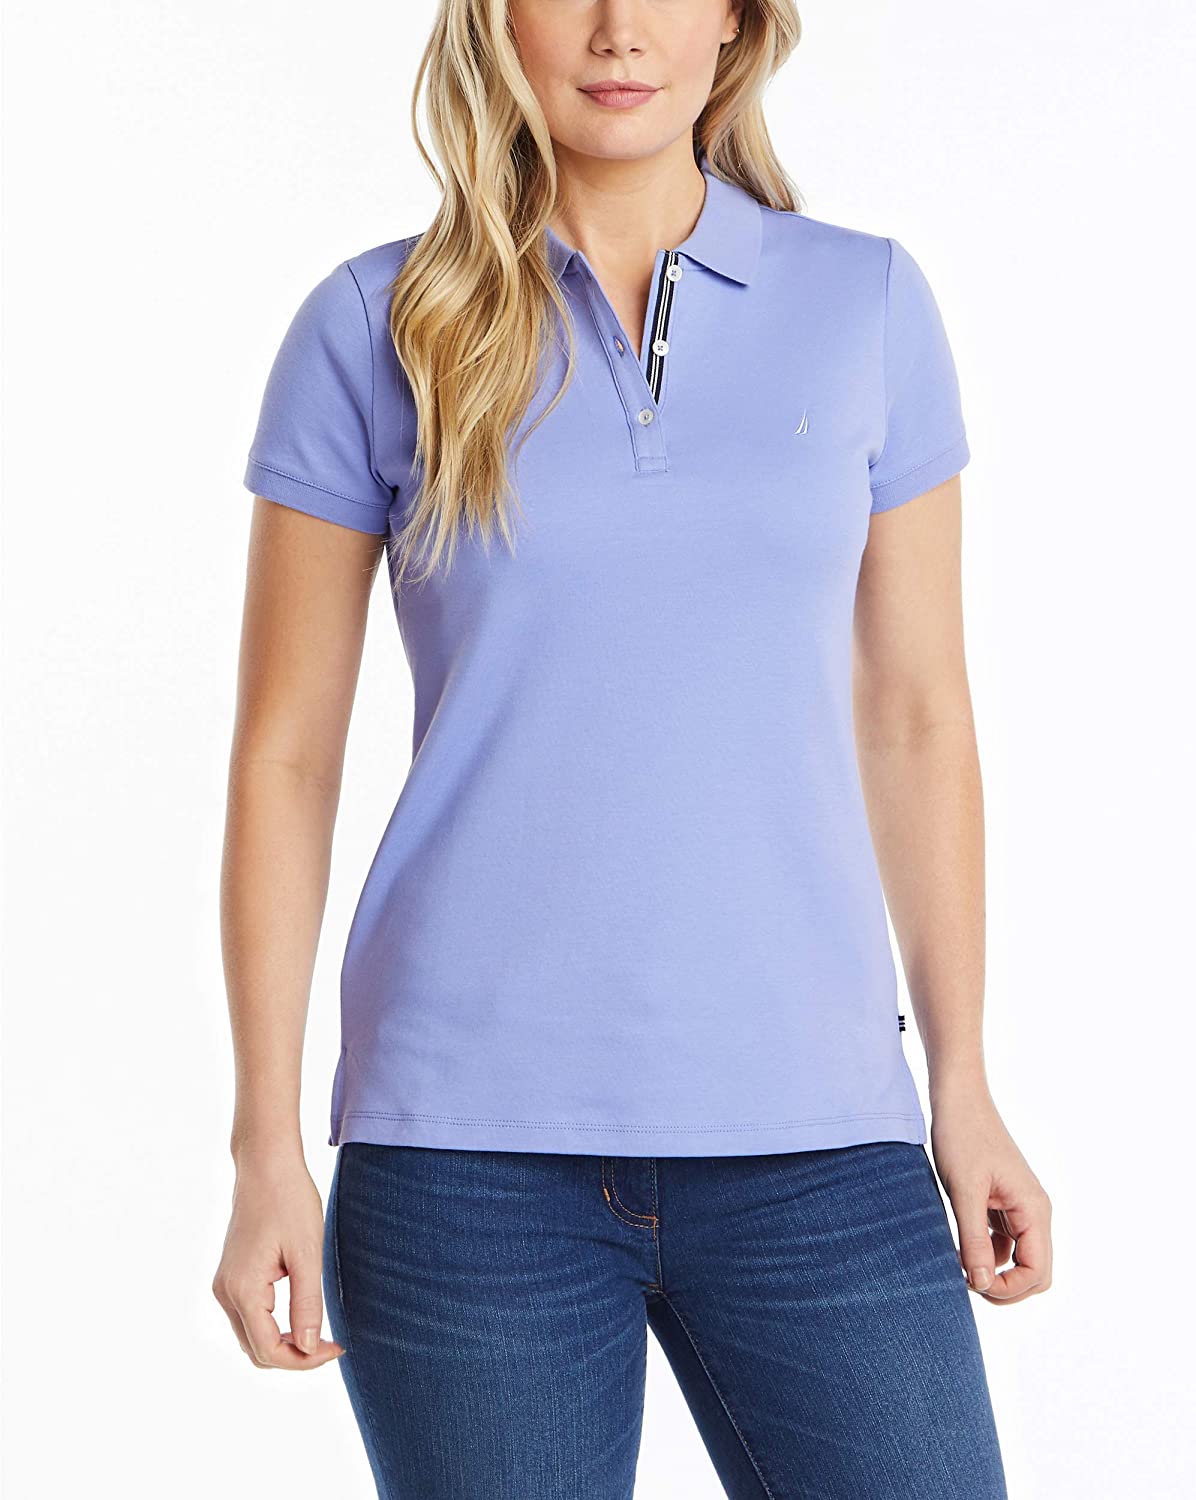 Nautica Women's 3-Button Short Sleeve Breathable 100% Cotton Polo Shirt